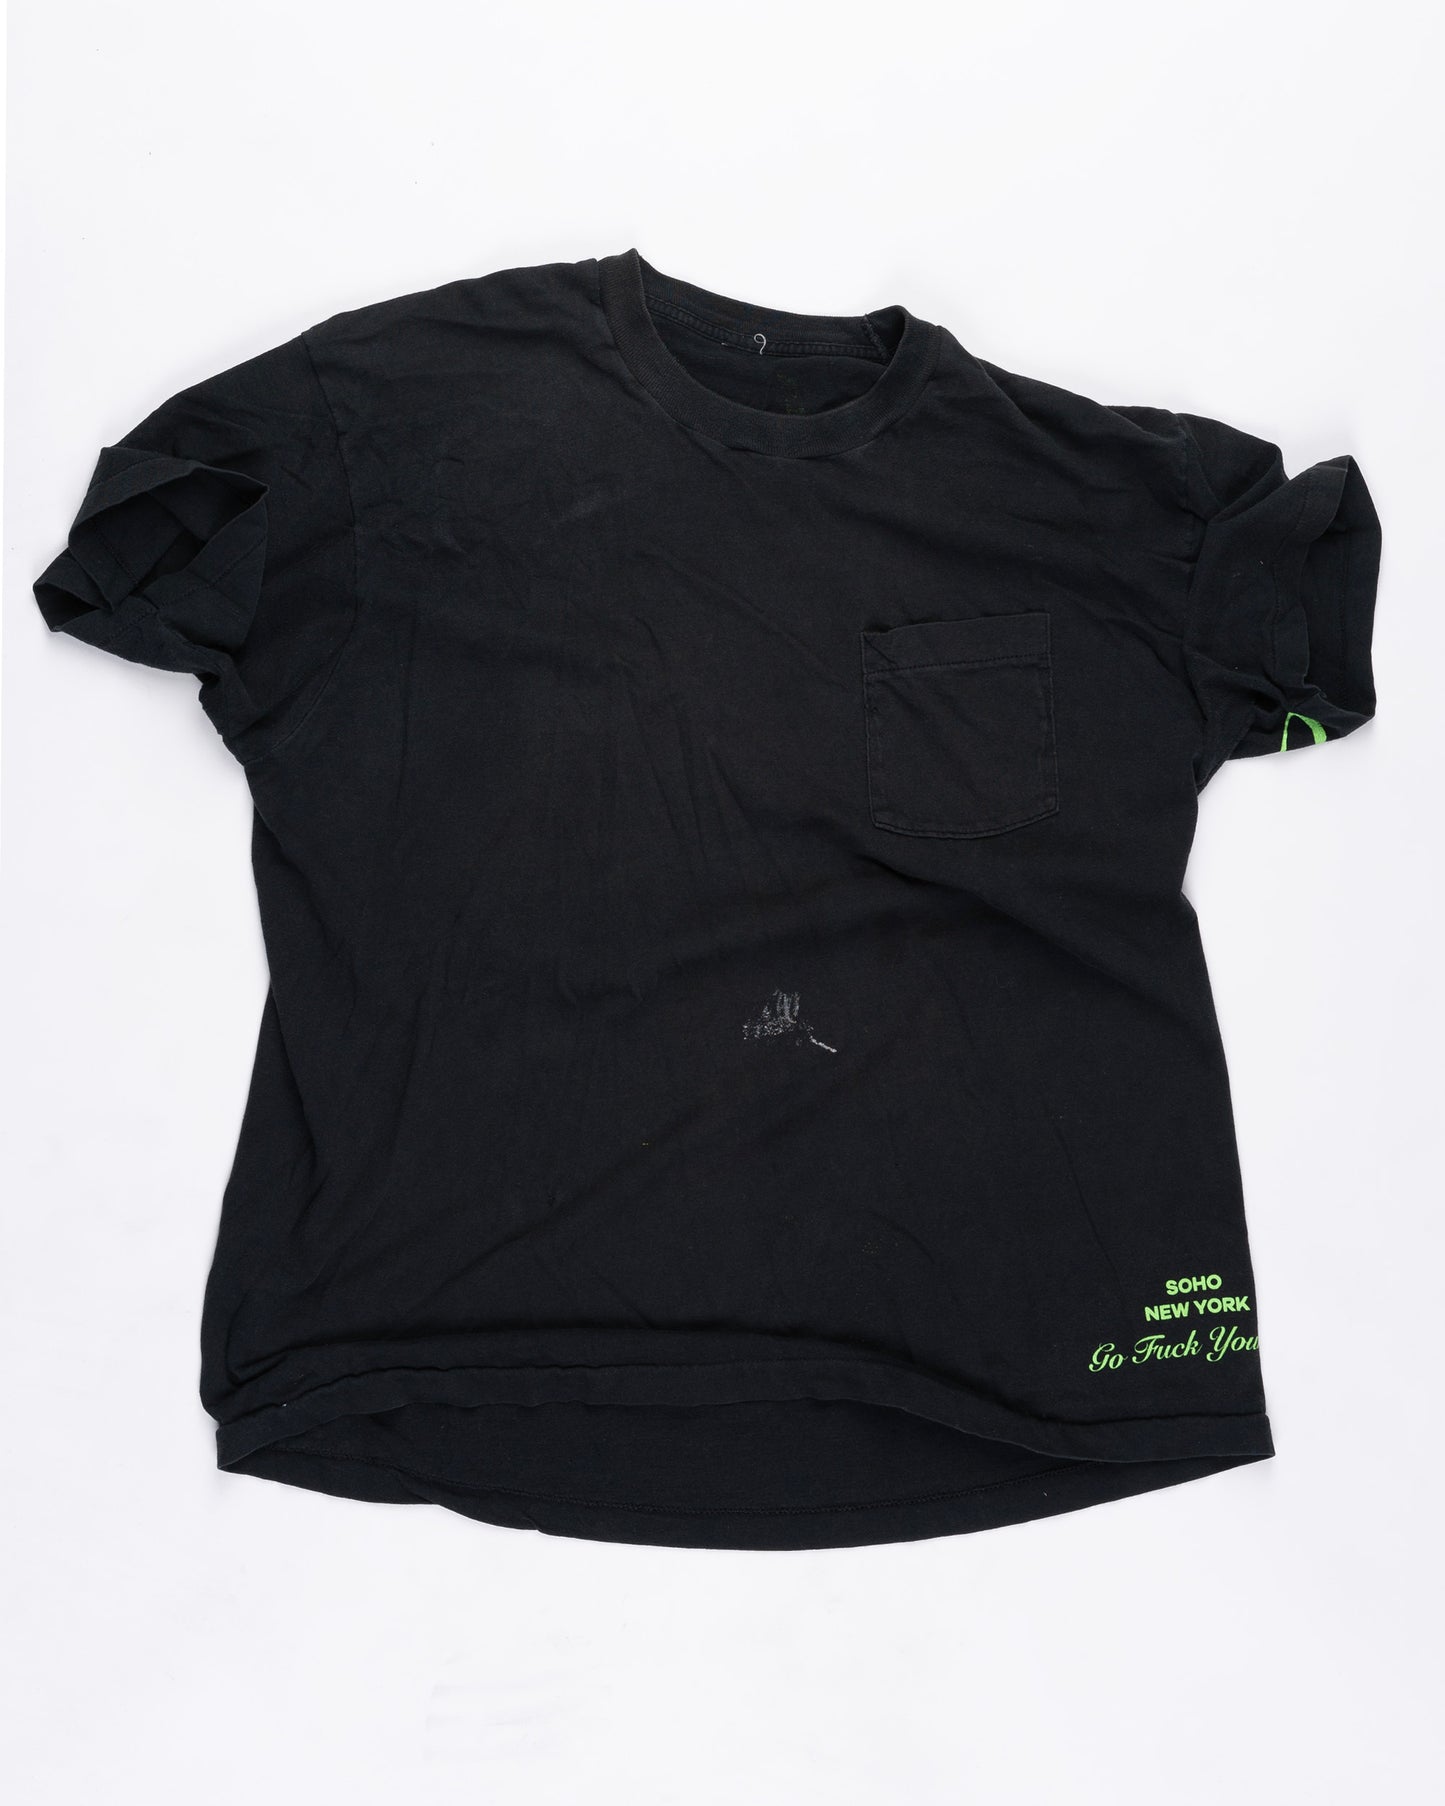 Black With Pocket T-Shirt Size: XXLarge